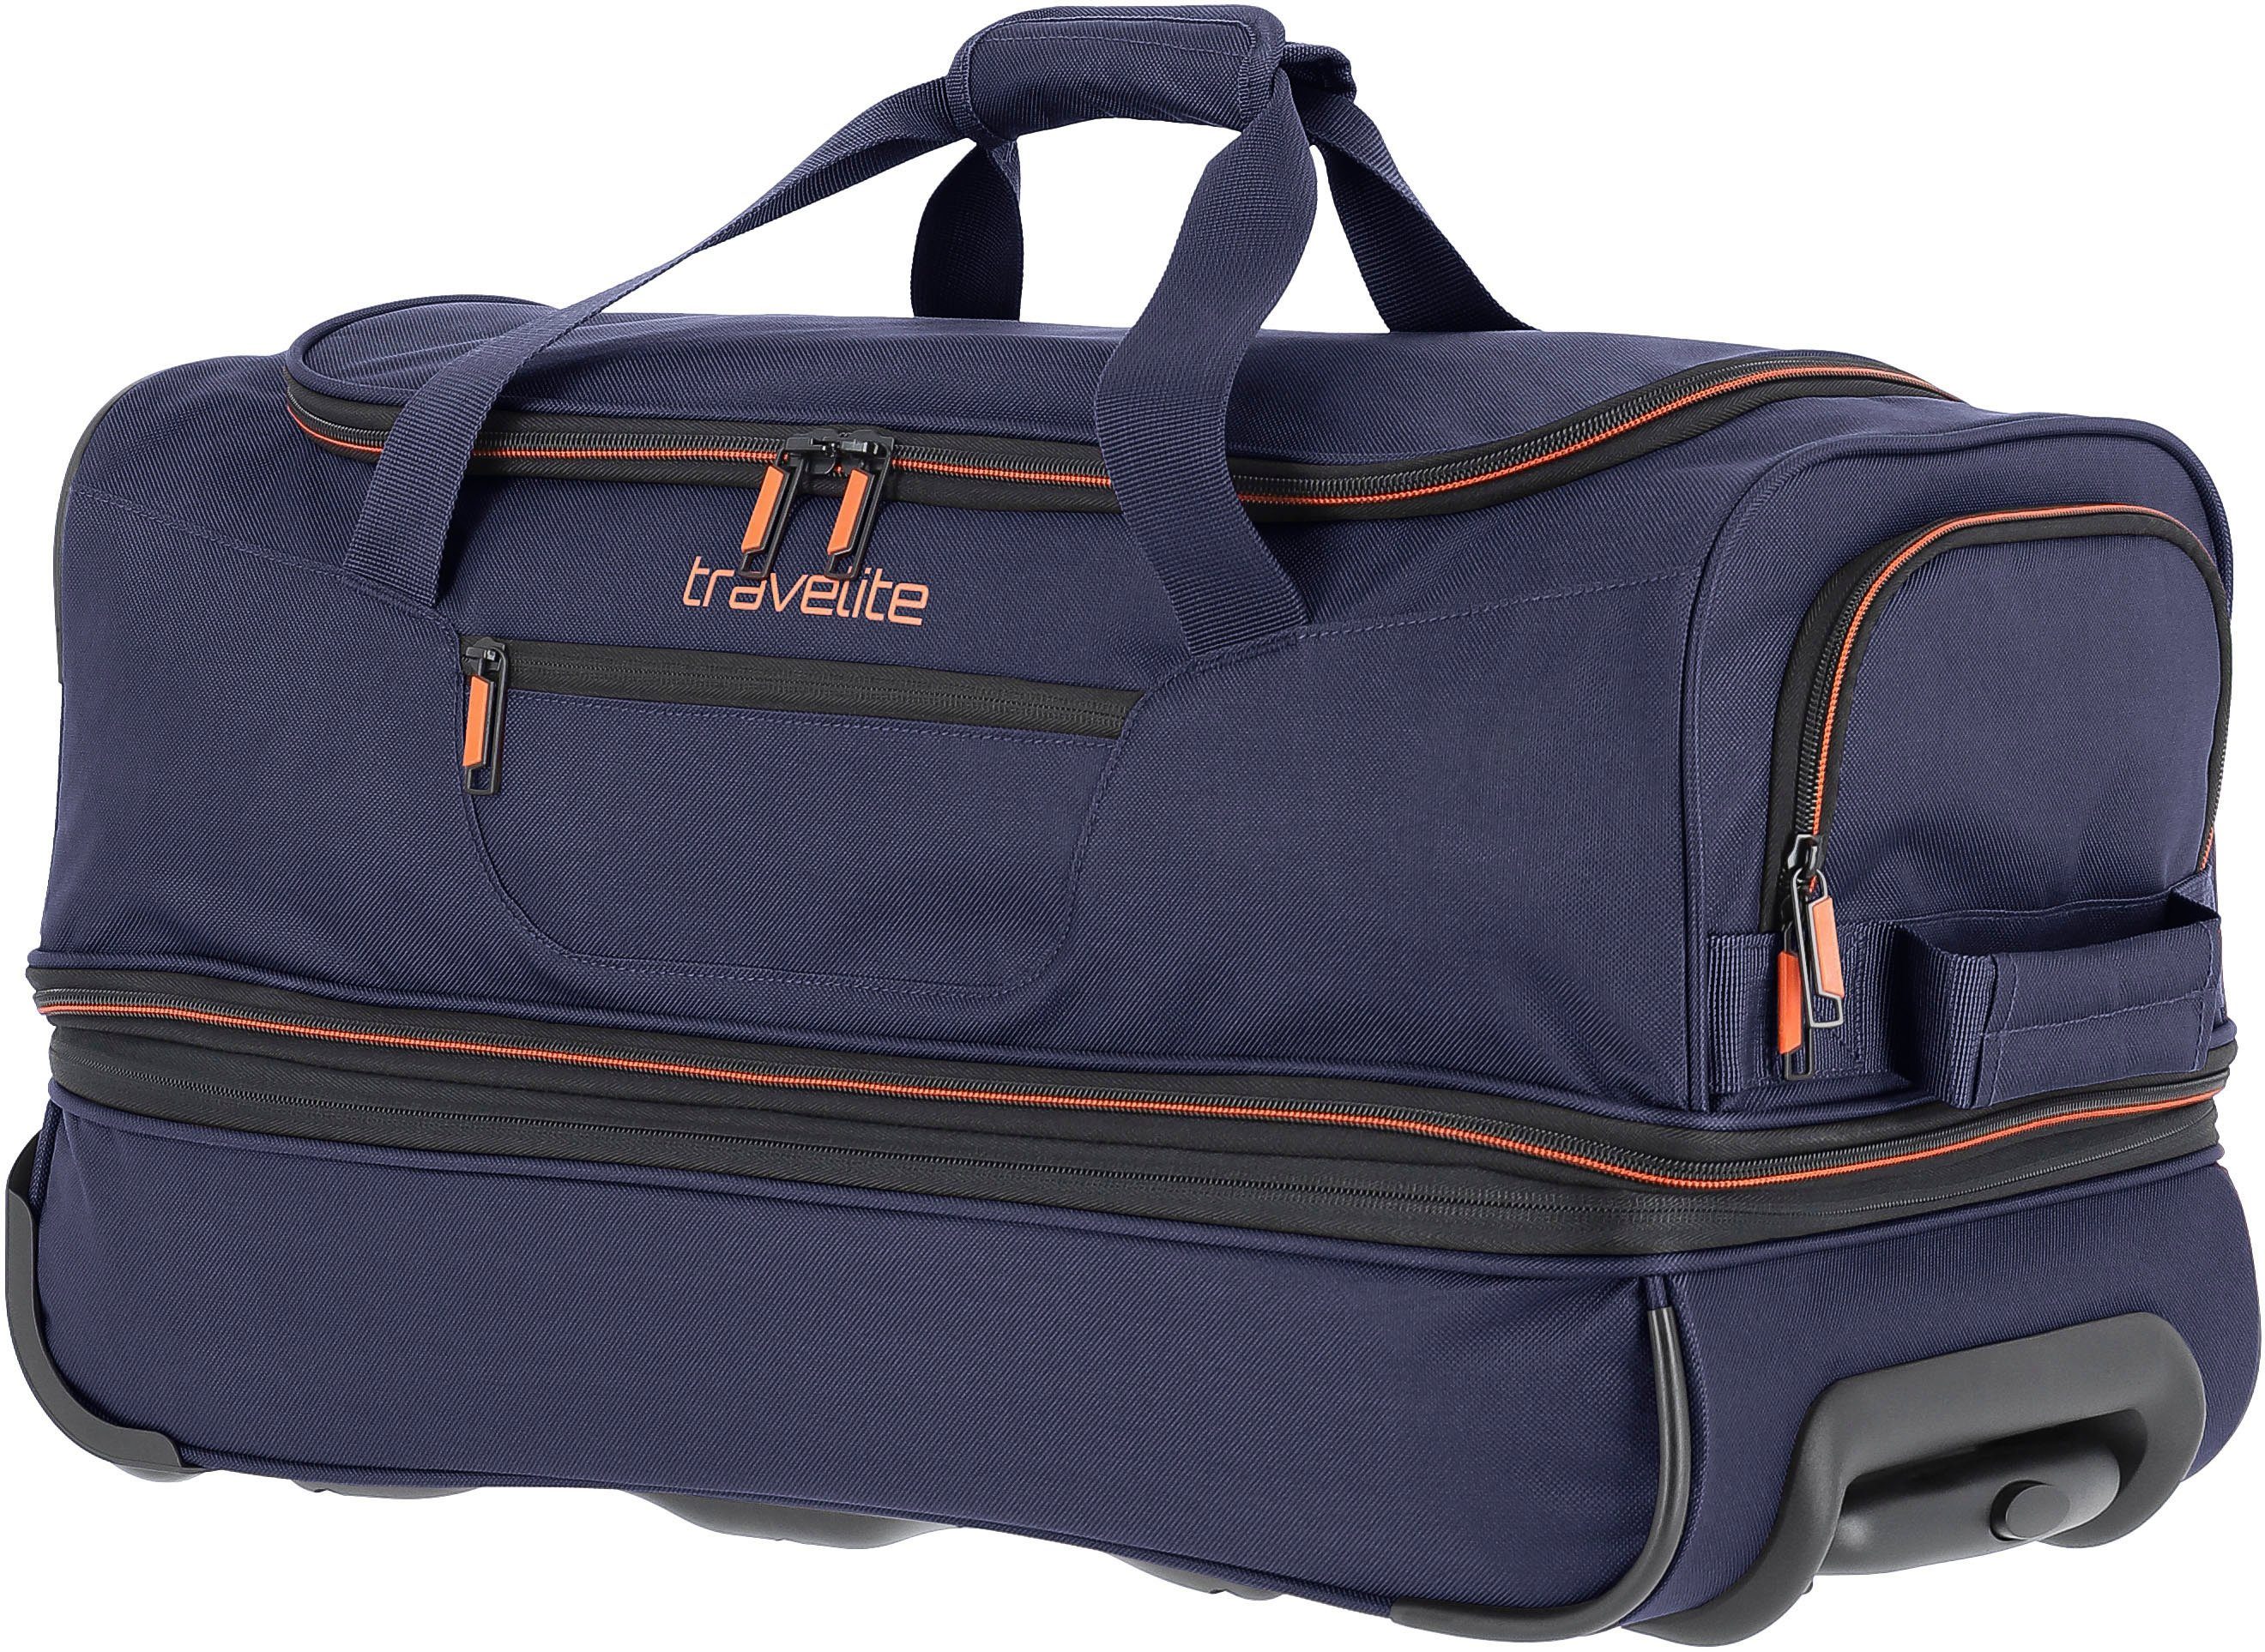 travelite mit Rollen Basics, 55 cm, marine/orange, Reisetasche